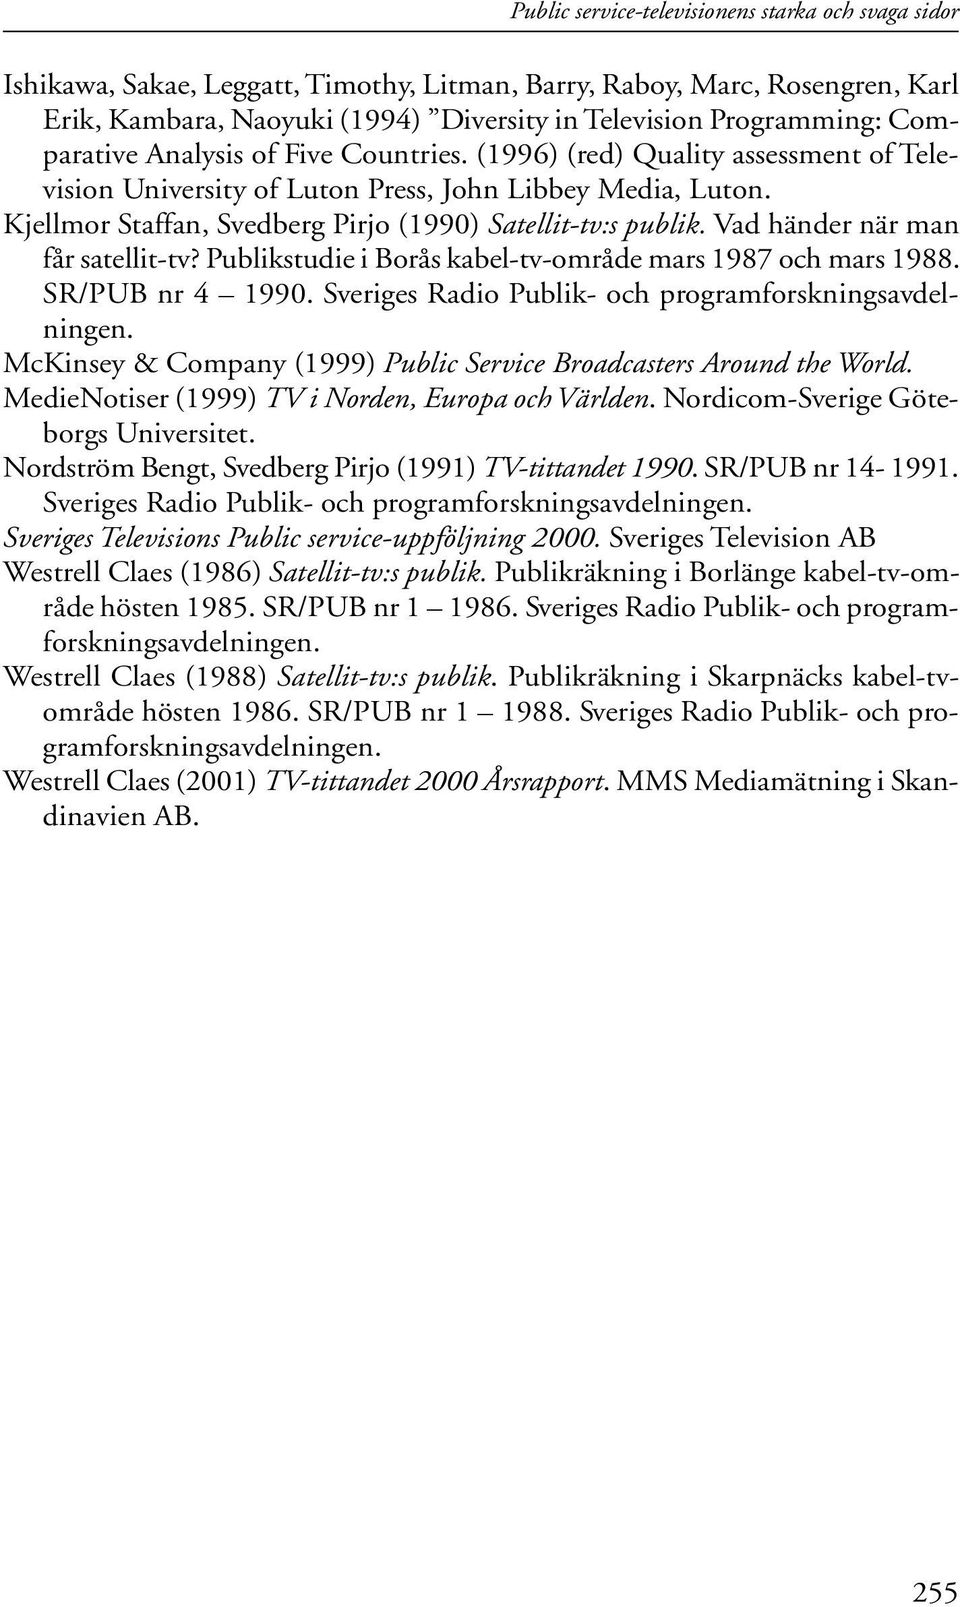 Vad händer när man får satellit-tv? Publikstudie i Borås kabel-tv-område mars 1987 och mars 1988. SR/PUB nr 4 1990. Sveriges Radio Publik- och programforskningsavdelningen.